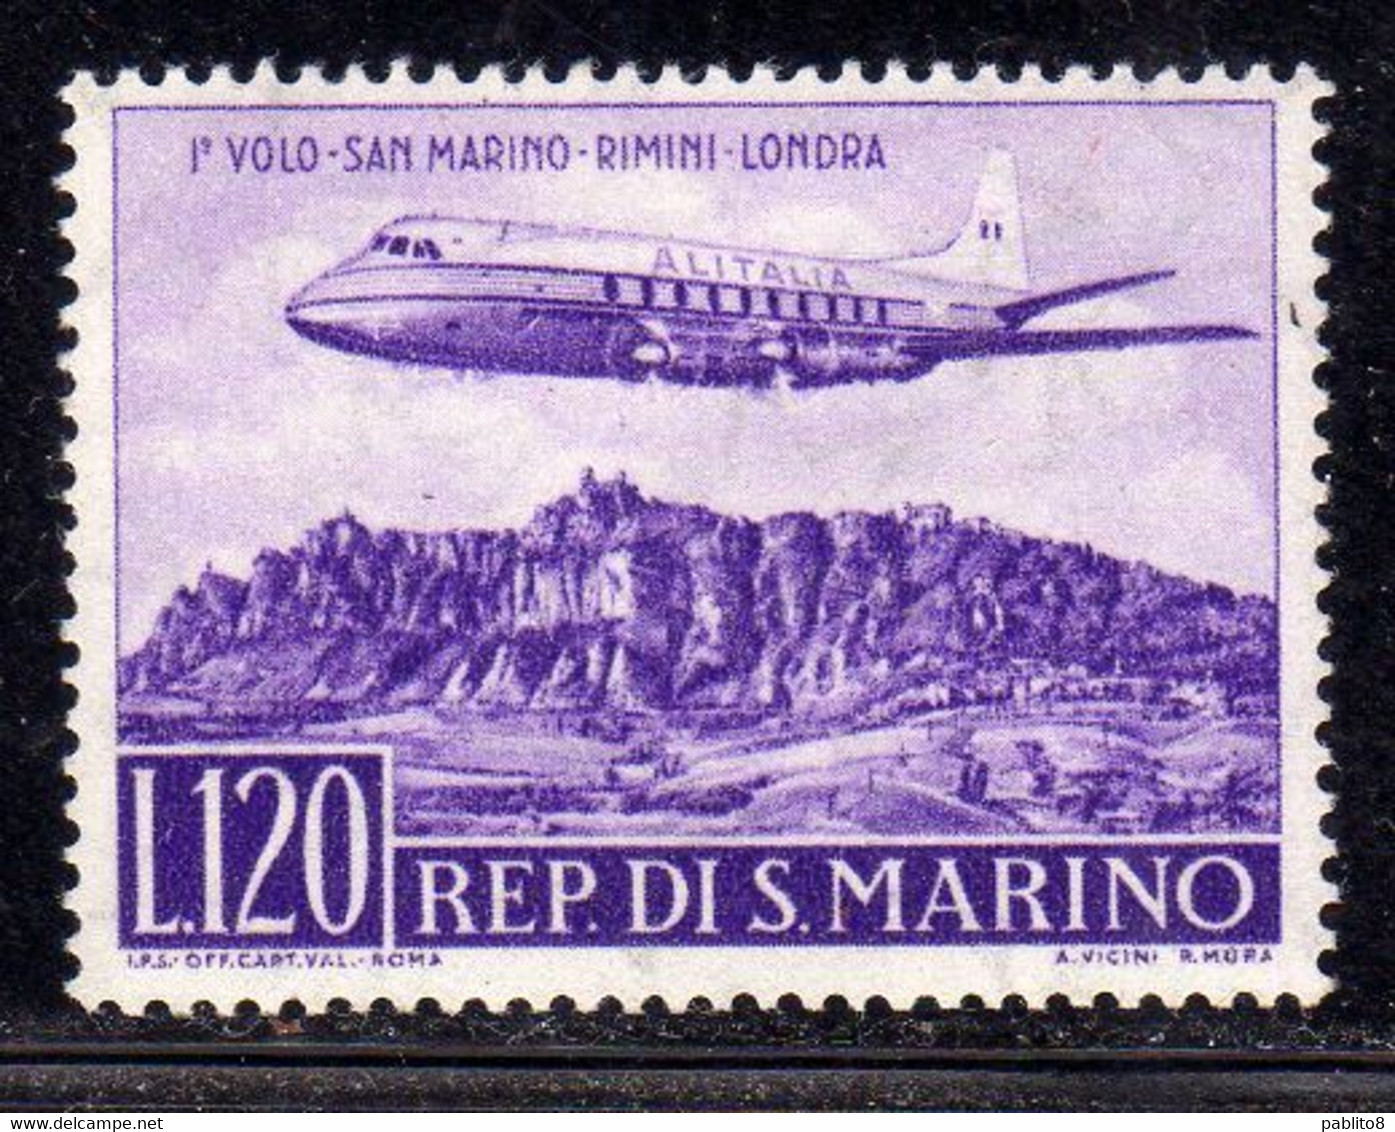 REPUBBLICA DI SAN MARINO 1959 POSTA AEREA AEREA AIR MAIL PRIMO 1° VOLO SM RIMINI LONDRA 1TH FIRST FLIGHT LIRE 120 MNH - Airmail